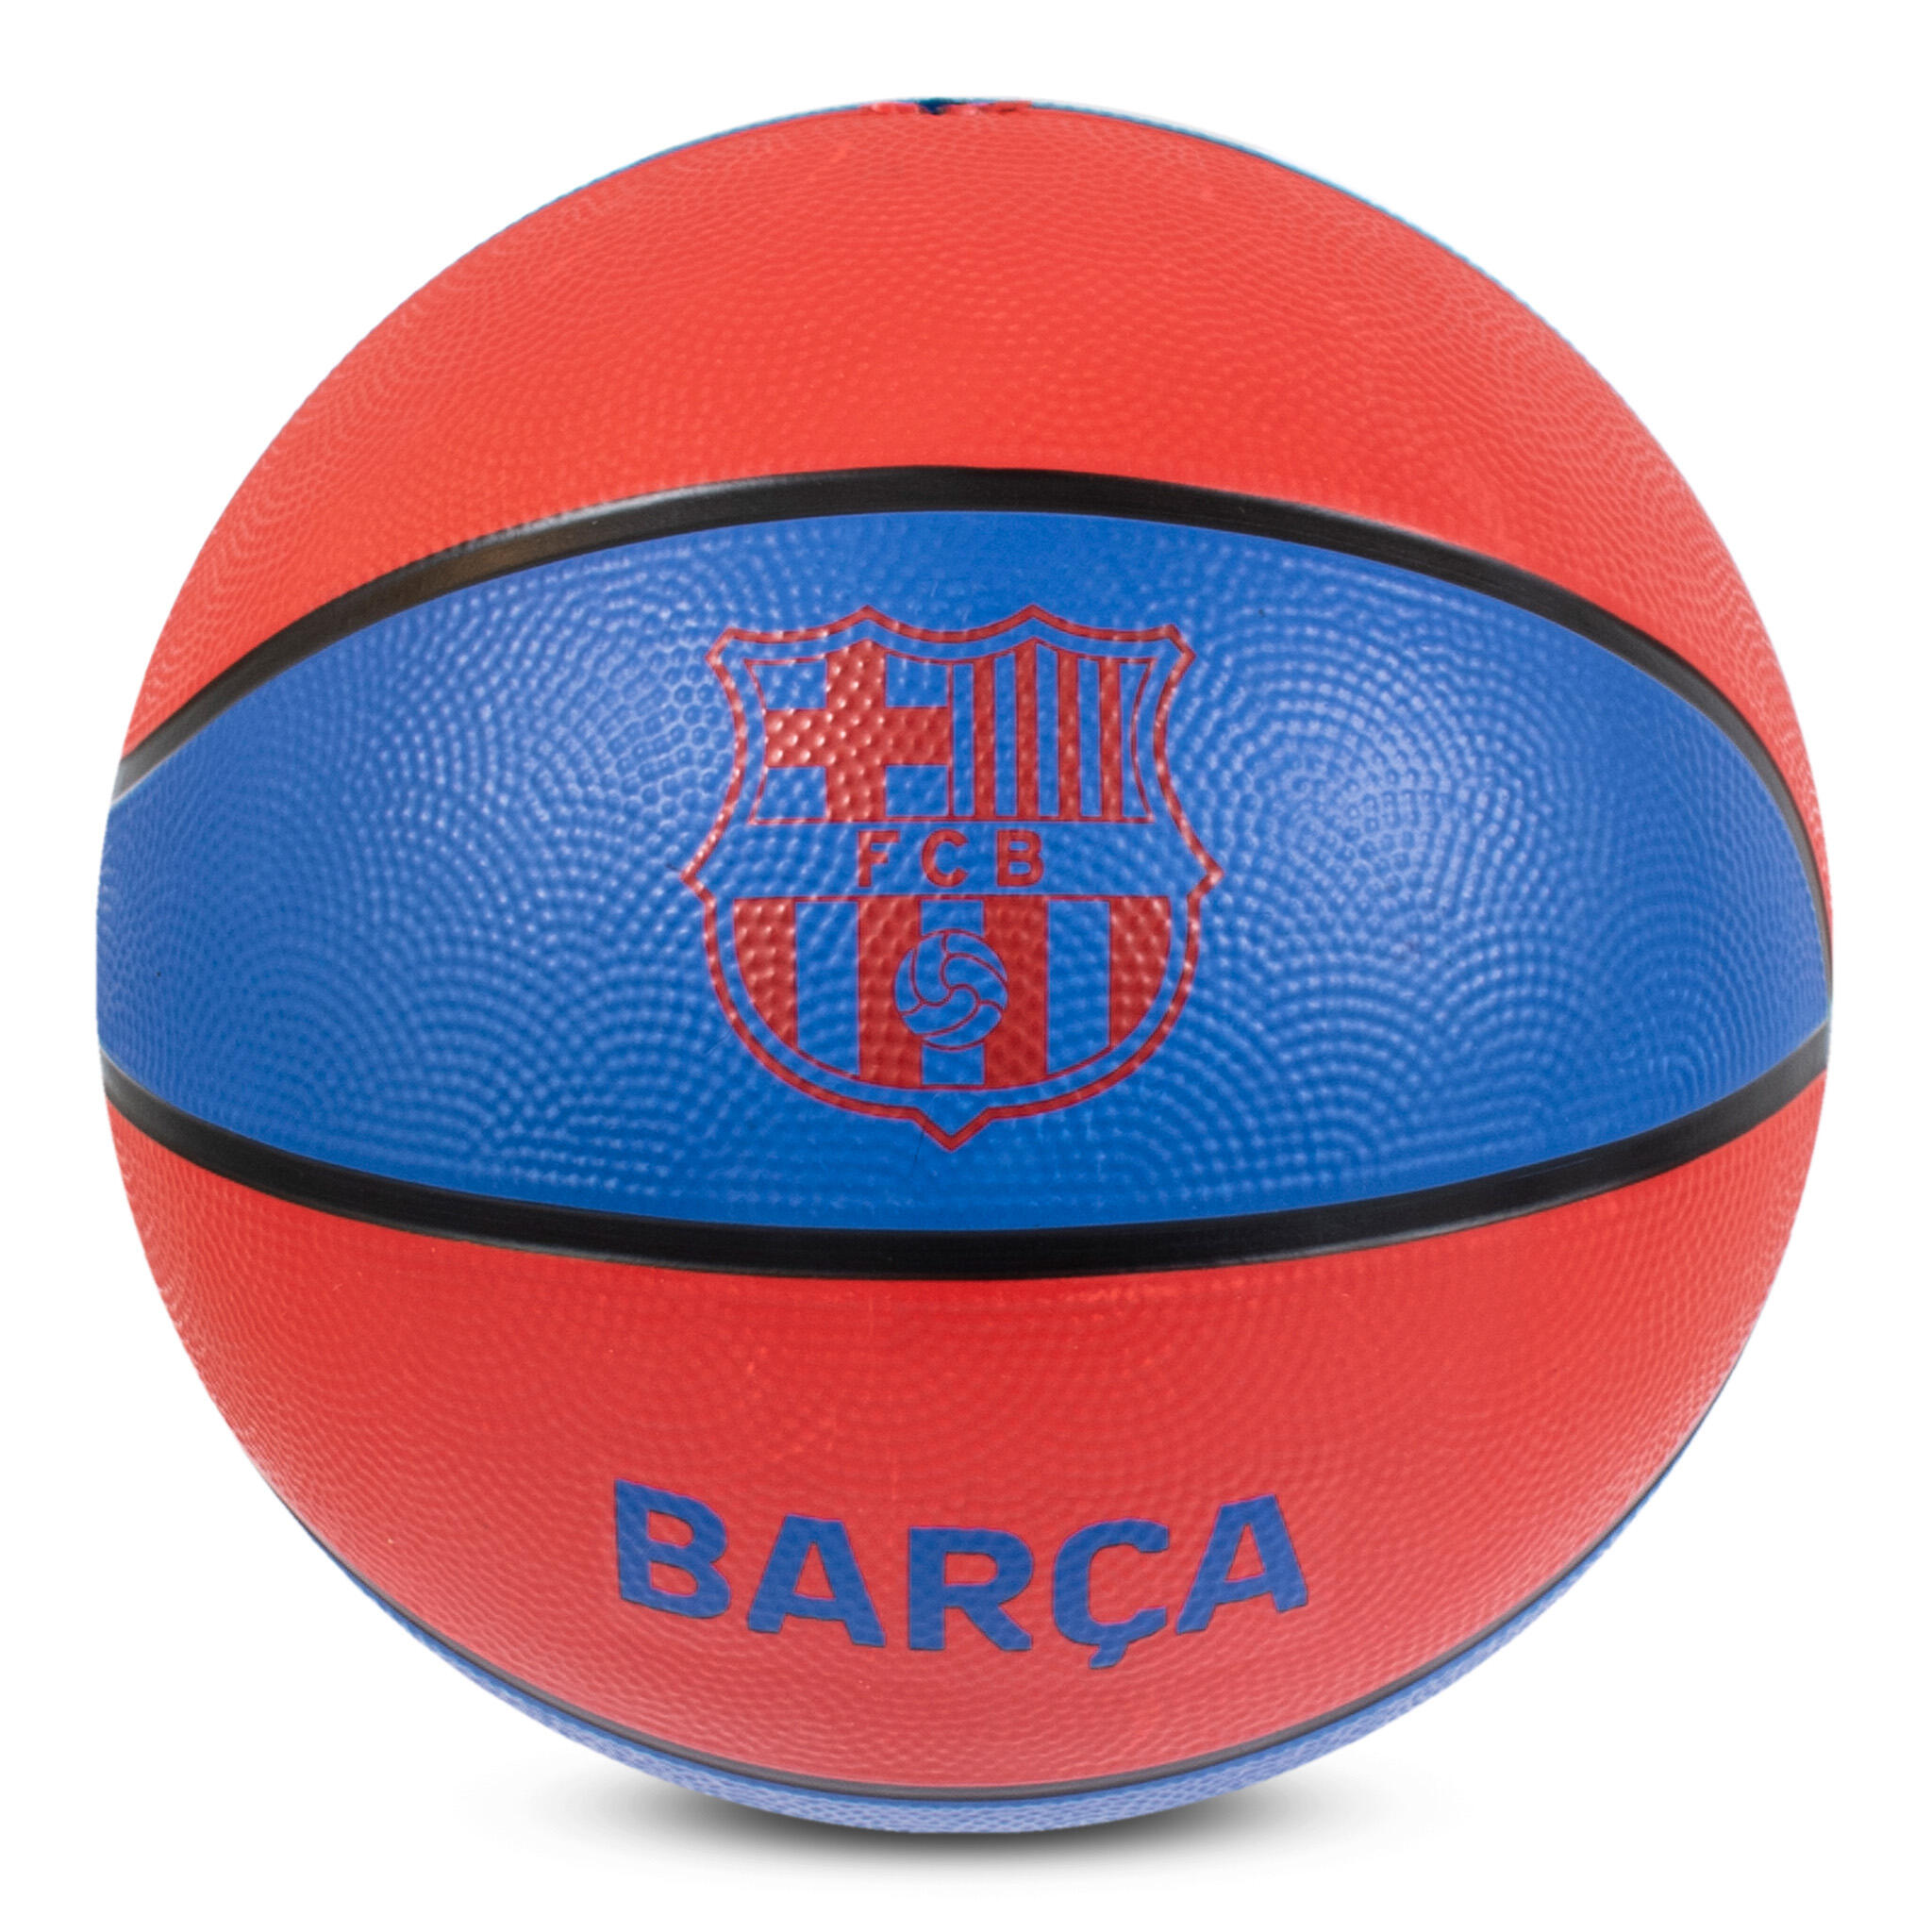 HY-PRO Barcelona Size 7 Basketball